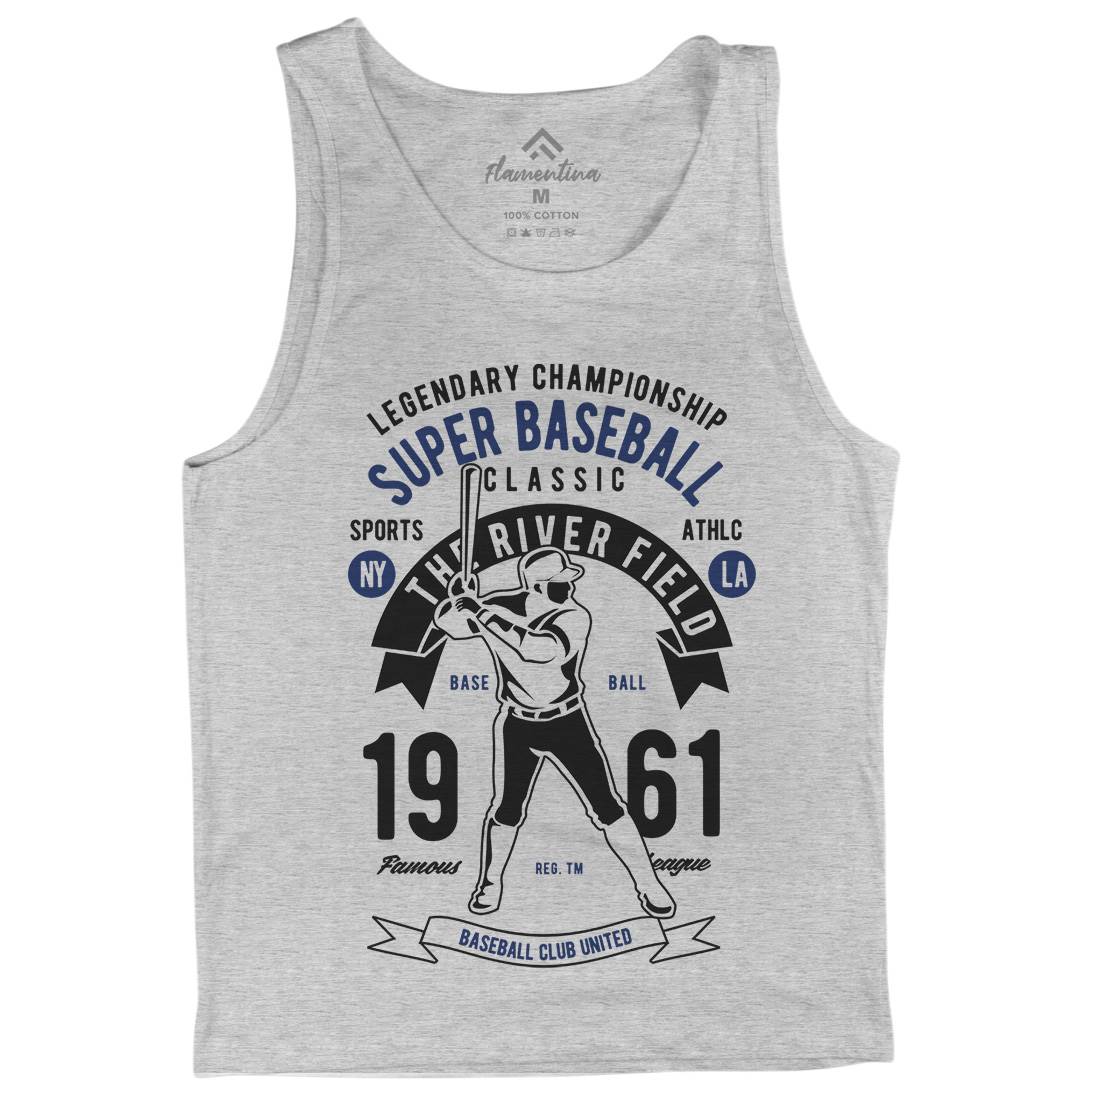 Super Baseball Mens Tank Top Vest Sport B455